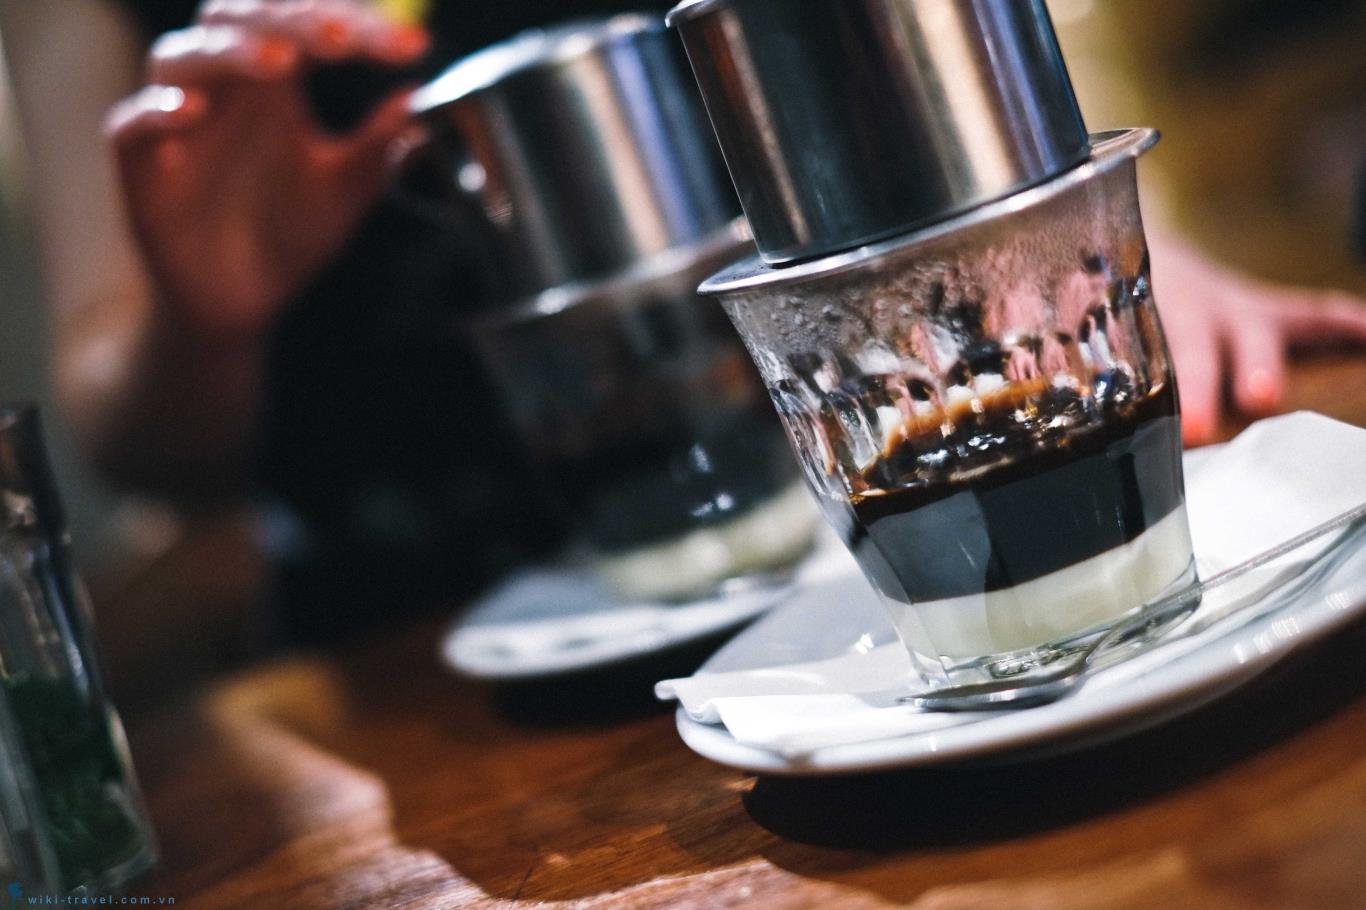 Hình ảnh ly cà phê phin hay nhất là điều mà không thể bỏ qua nếu bạn là một tín đồ của cà phê. Tất cả những hơn ảnh này đều thể hiện sự tuyệt vời của một ly cà phê mang lại cho đời sống của chúng ta. Hãy cùng thưởng thức và trải nghiệm sự khác biệt của hương vị cà phê phin và cà phê espresso.